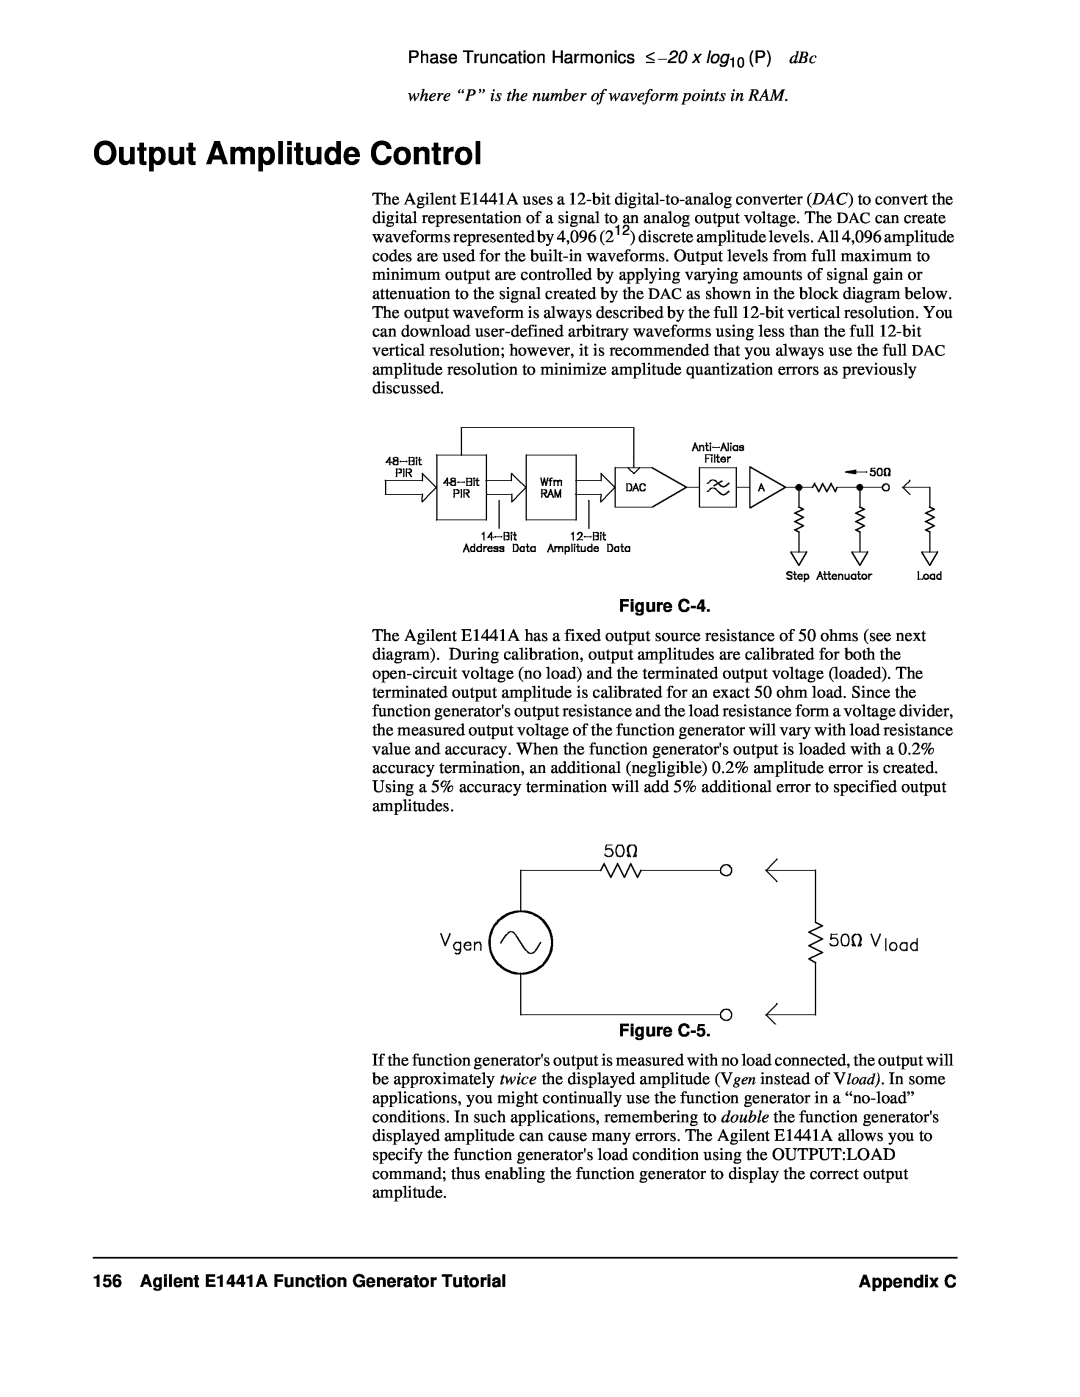 Agilent Technologies Output Amplitude Control, Figure C-4, Figure C-5, Agilent E1441A Function Generator Tutorial 